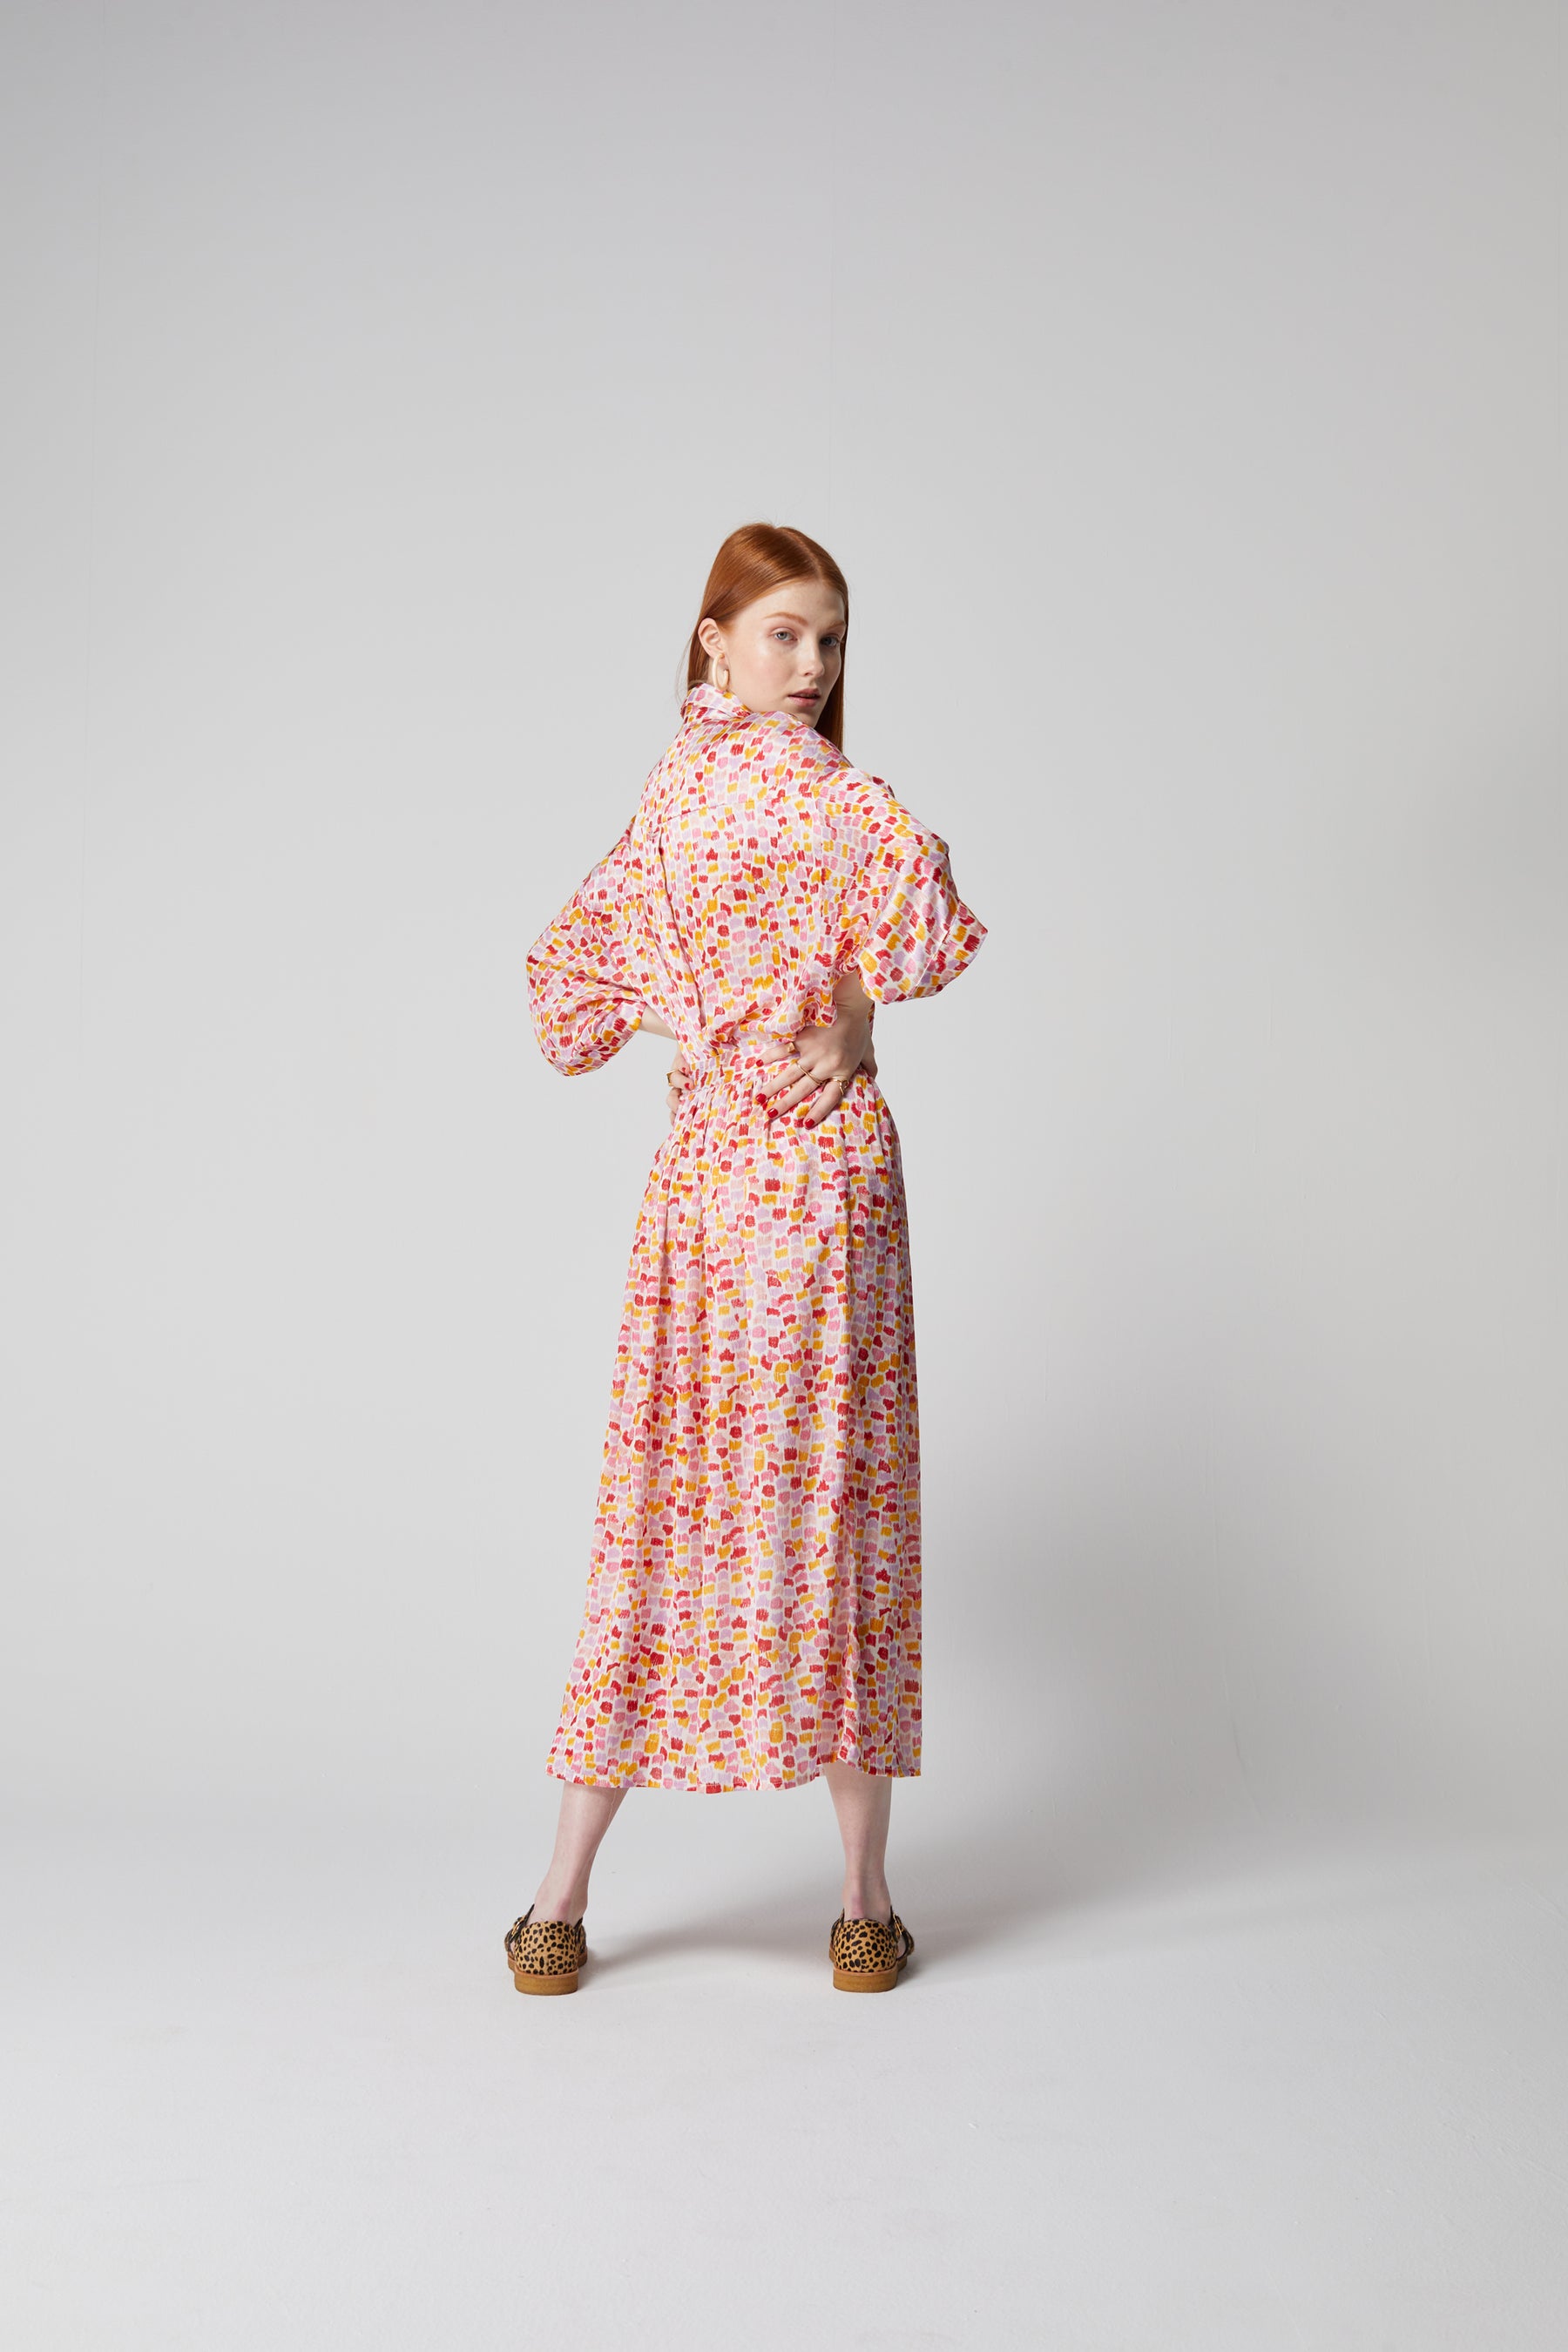 Orso skirt in Palette print